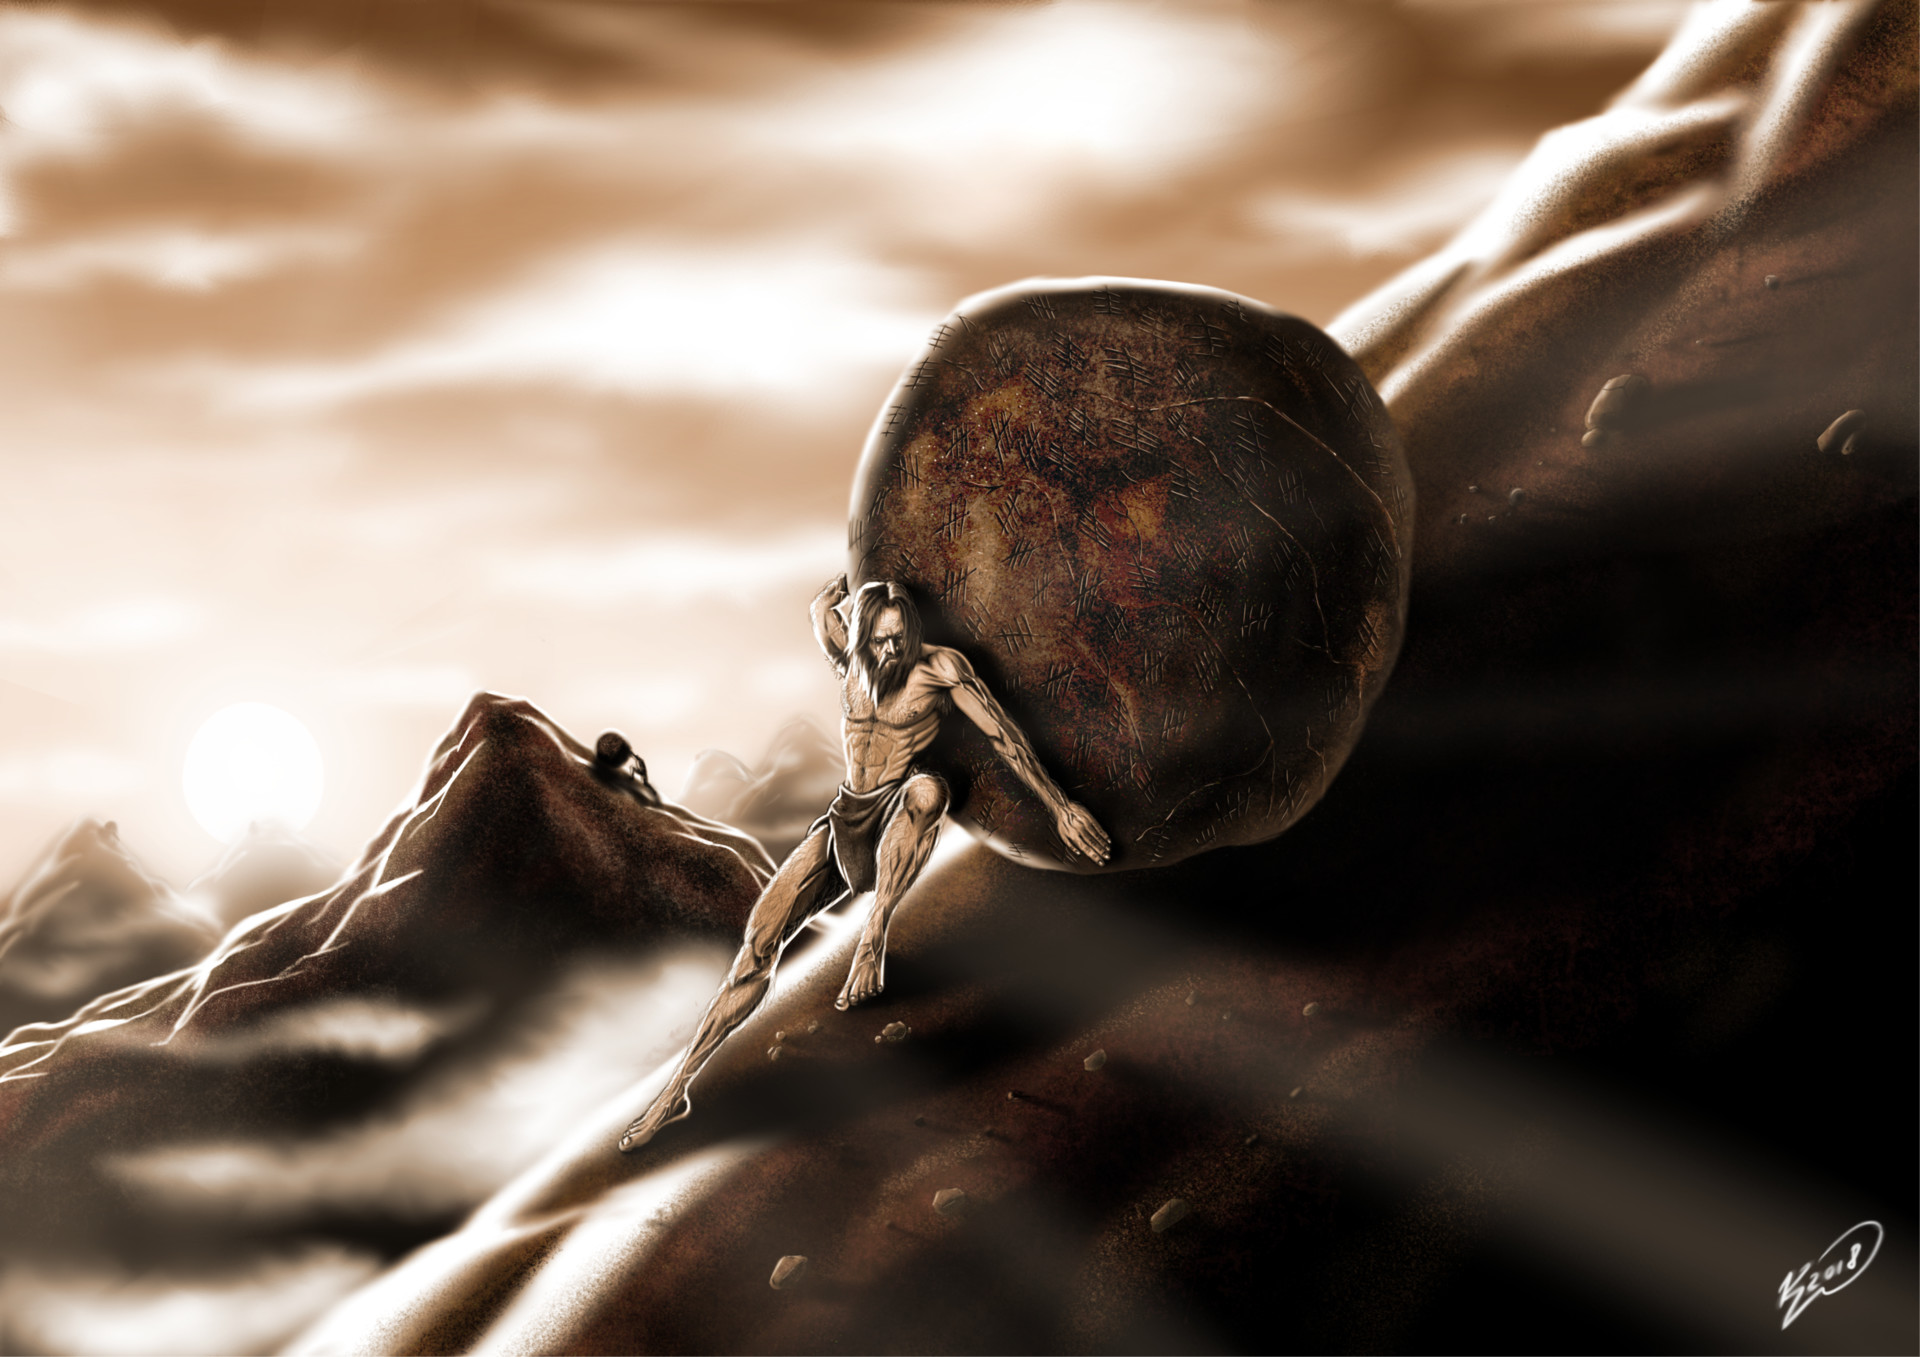 ArtStation - The Myth of Sisyphus.